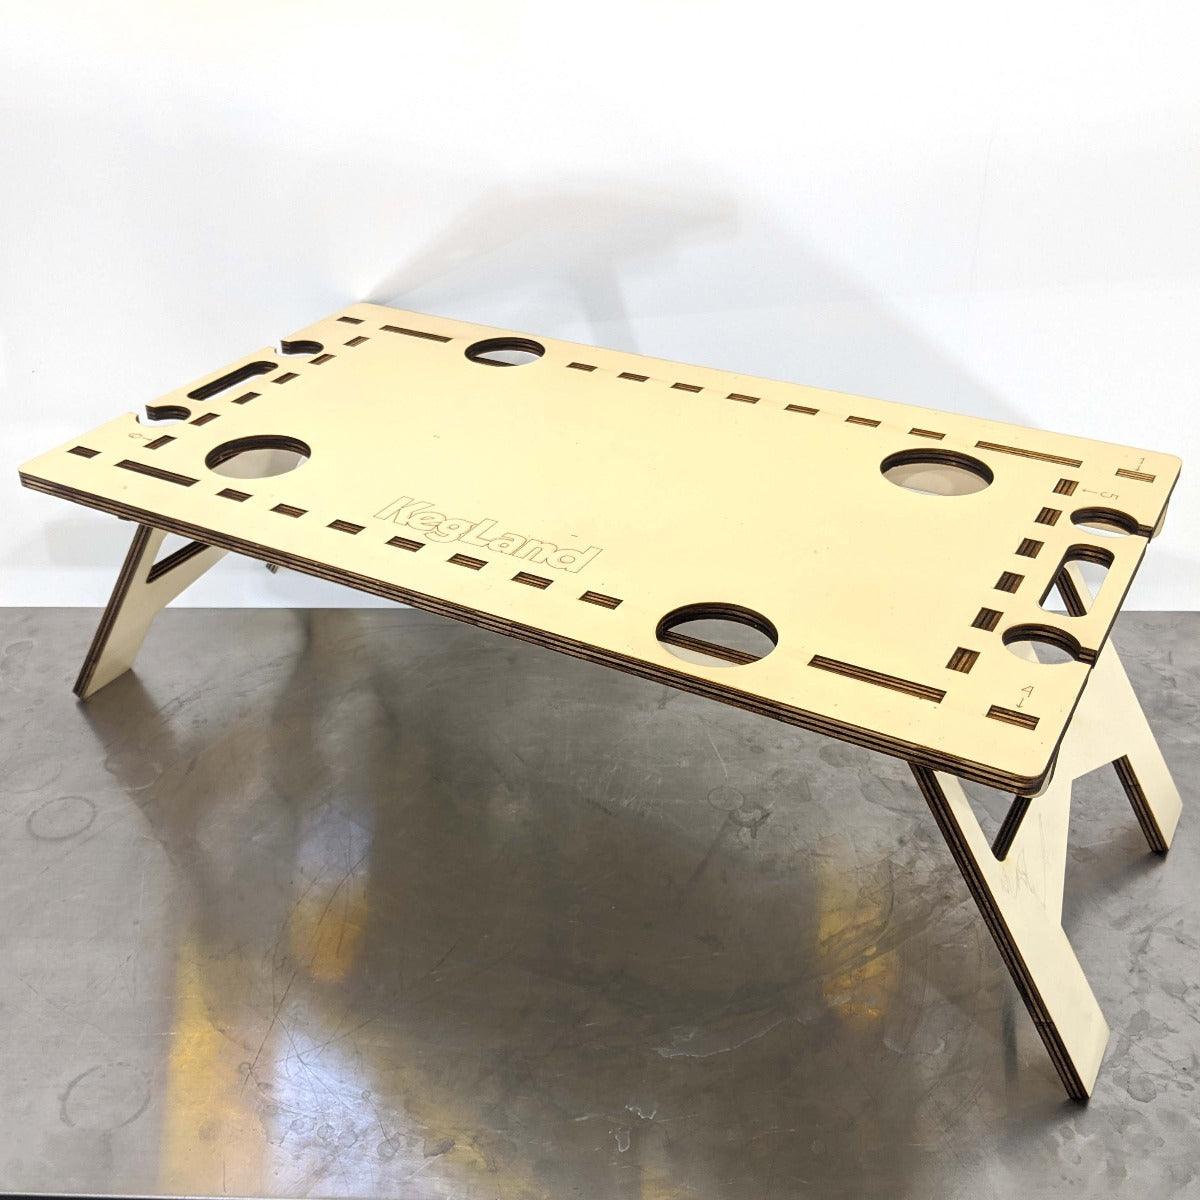 LaserCut - Mini Folding/Foldable Summer Picnic Table - 12mm Pine Ply 60cm x 40cm - KegLand